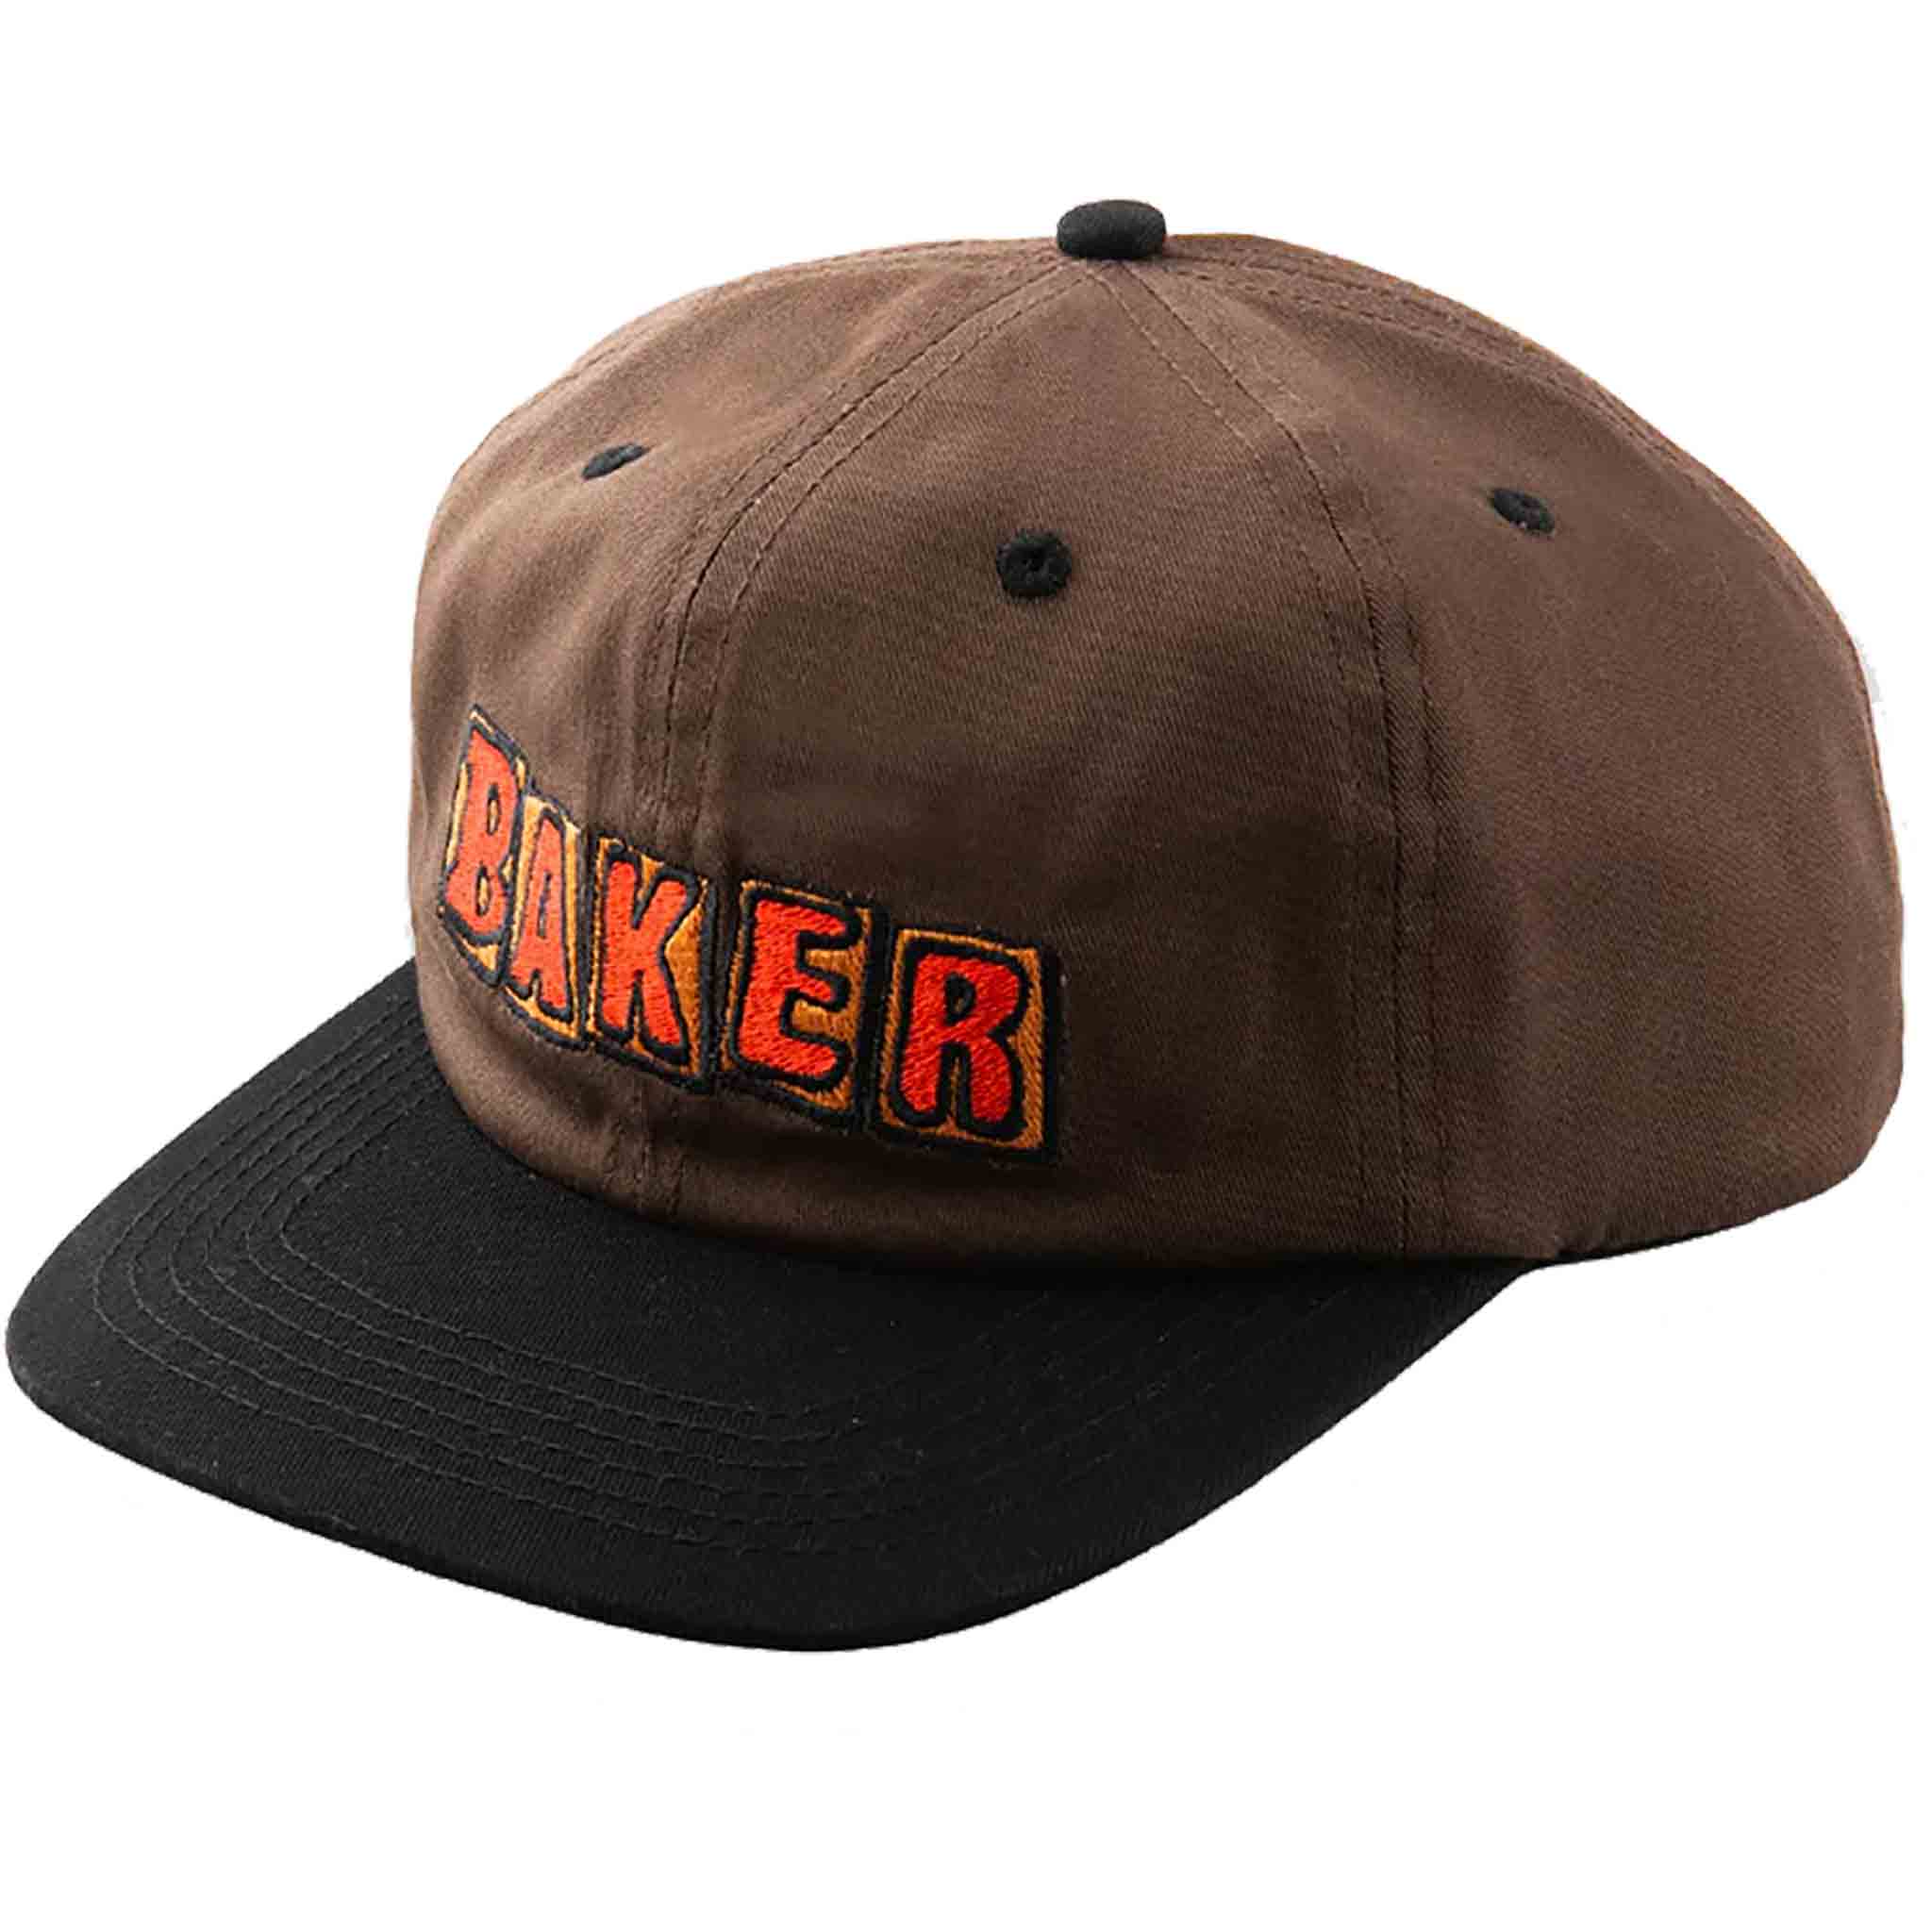 Baker Crumb Hat Brown Black Hats